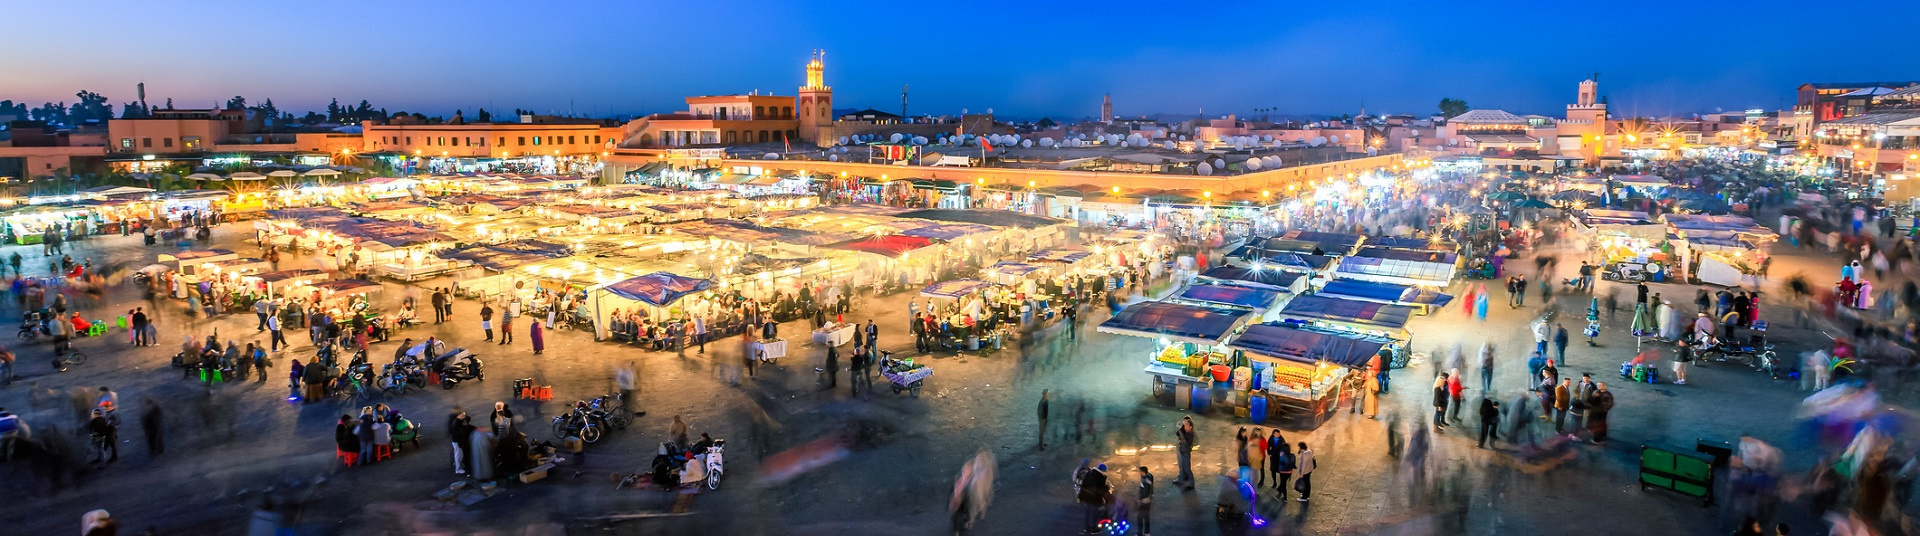 Hôtel pas cher Marrakech